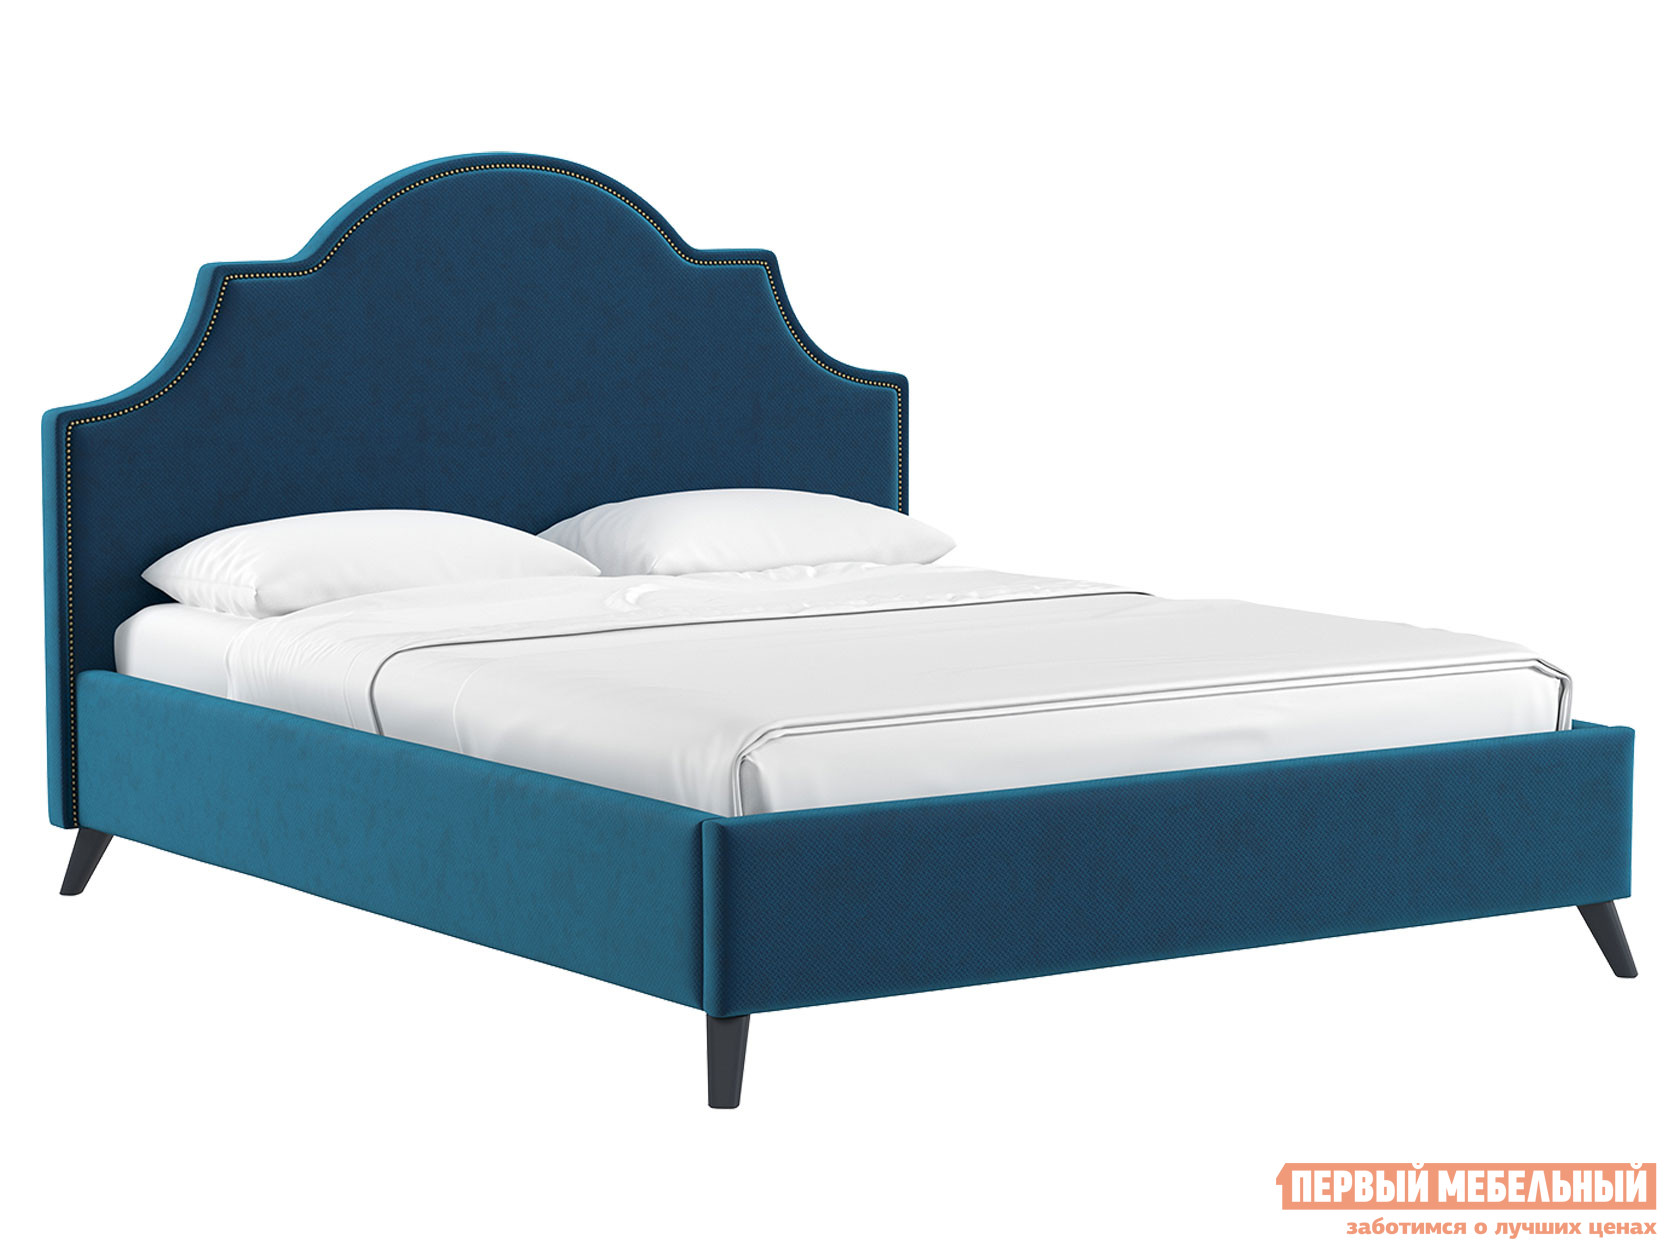 Двуспальная кровать  Кровать с подъемным механизмом Фаина Темно-синий,велюр, 1600 Х 2000 мм